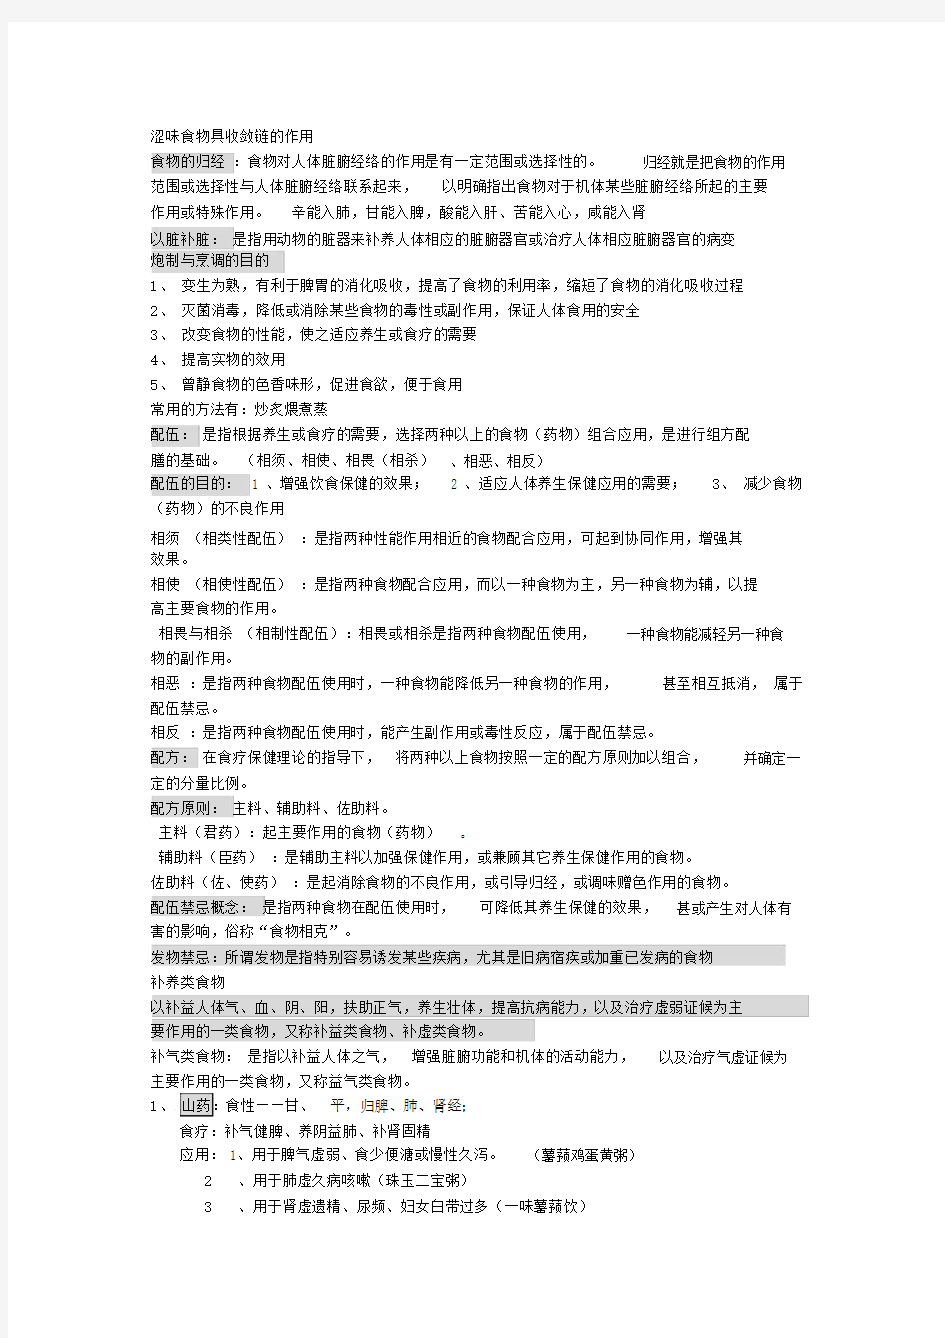 中医饮食保健学总结复习学习资料.docx